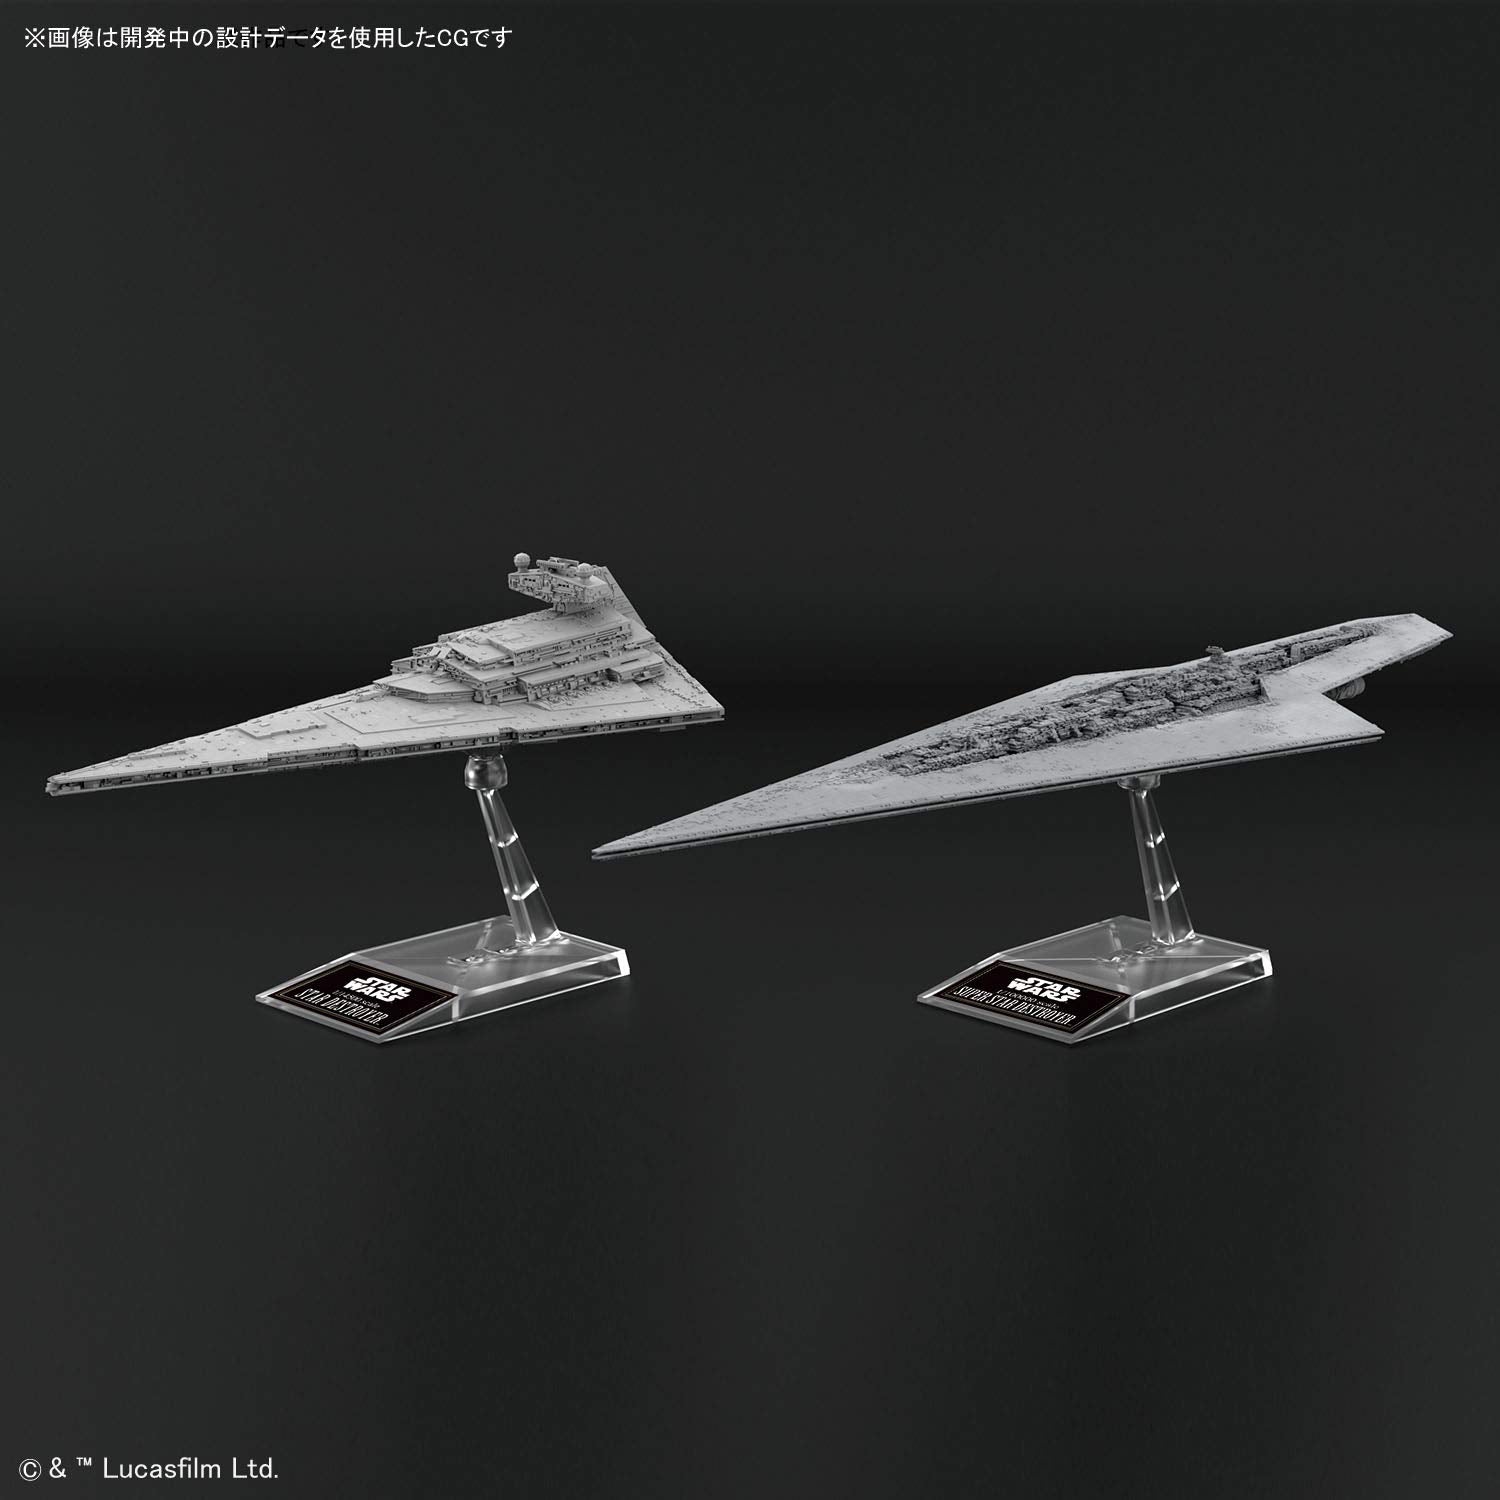 Super Star Destroyer 1/100000 & Star Destroyer 1/14500 Scale Model Kit